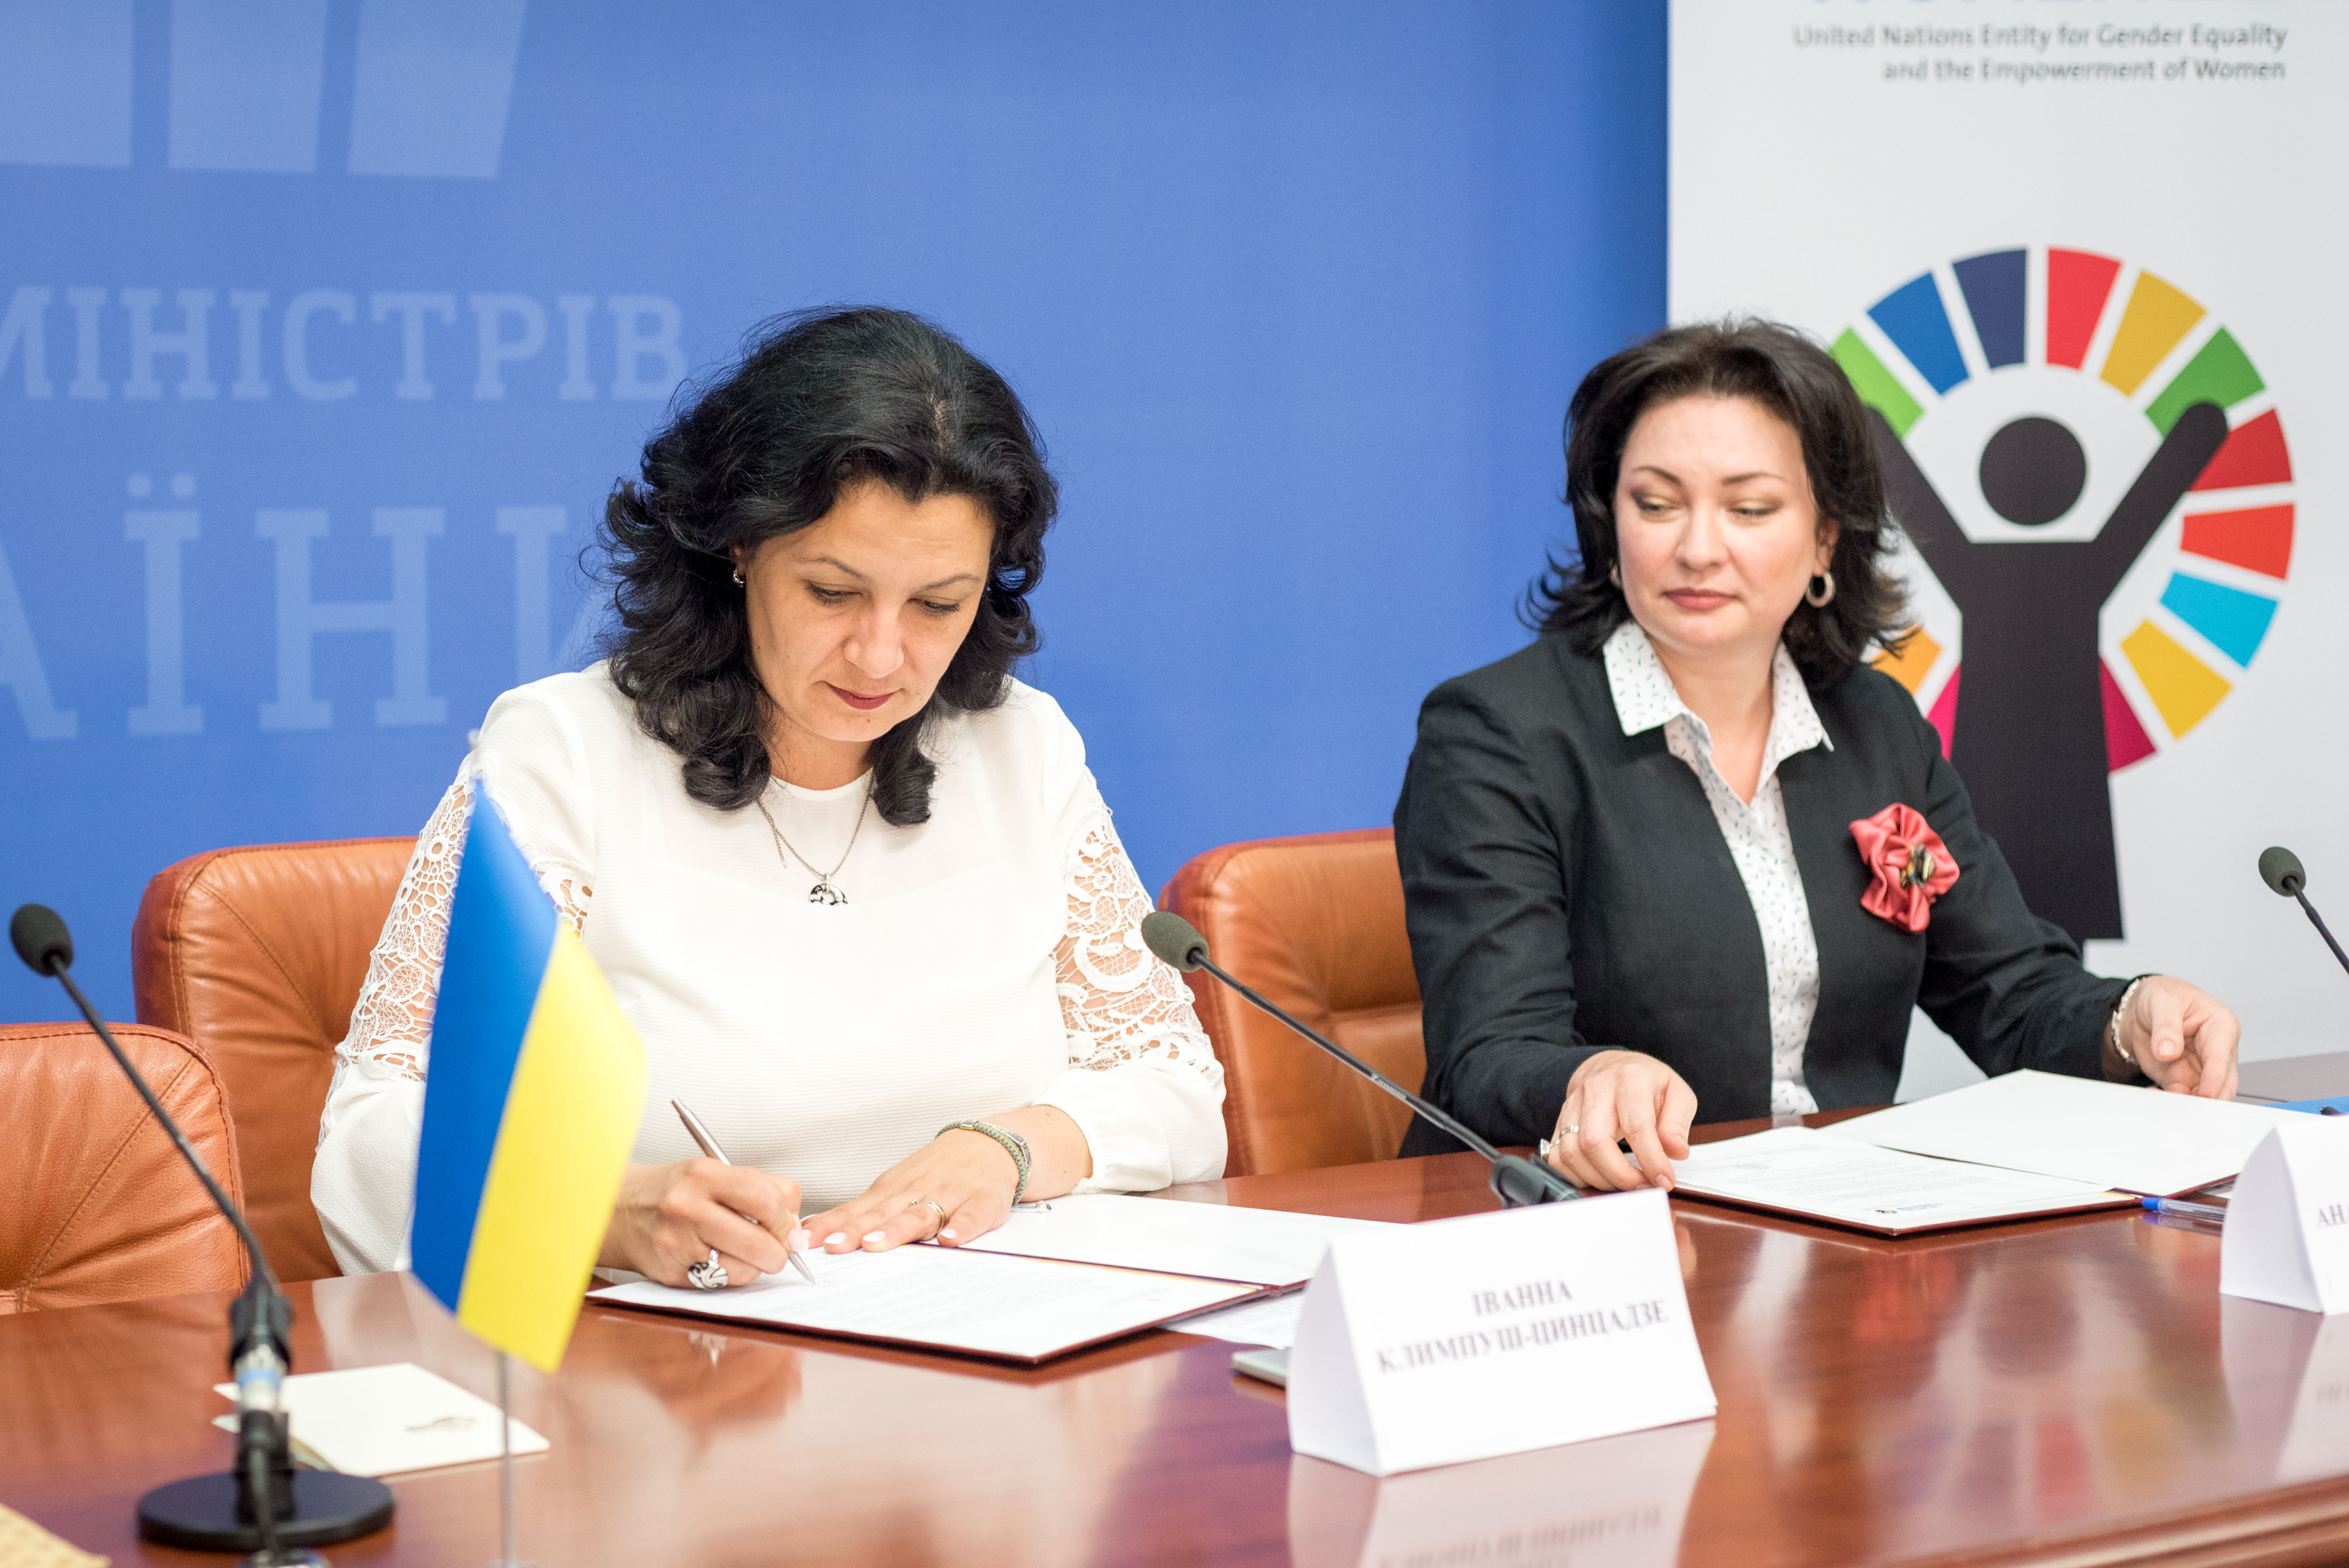 Уряд України та ООН Жінки в Україні розширюють співпрацю